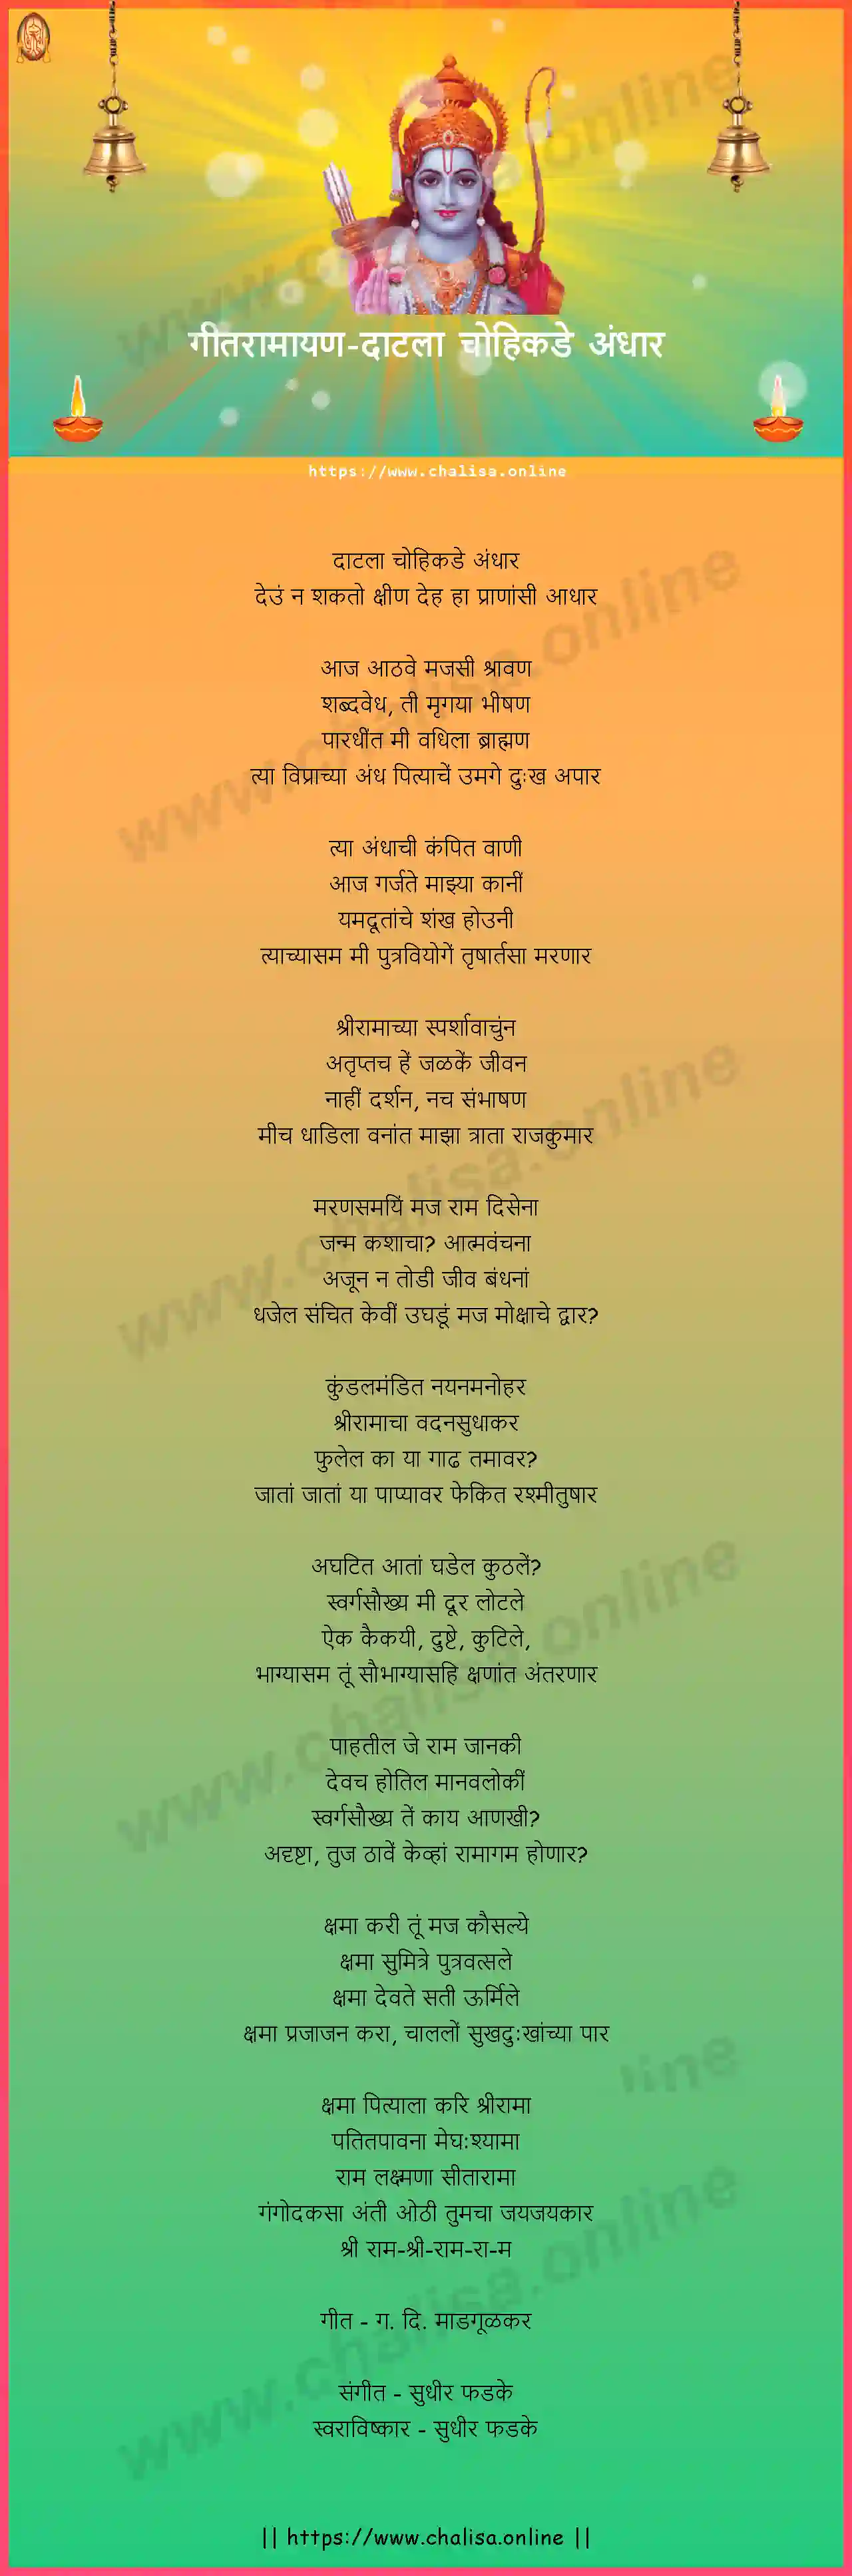 datala-chohikade-andhar-geet-ramayan-marathi-lyrics-download